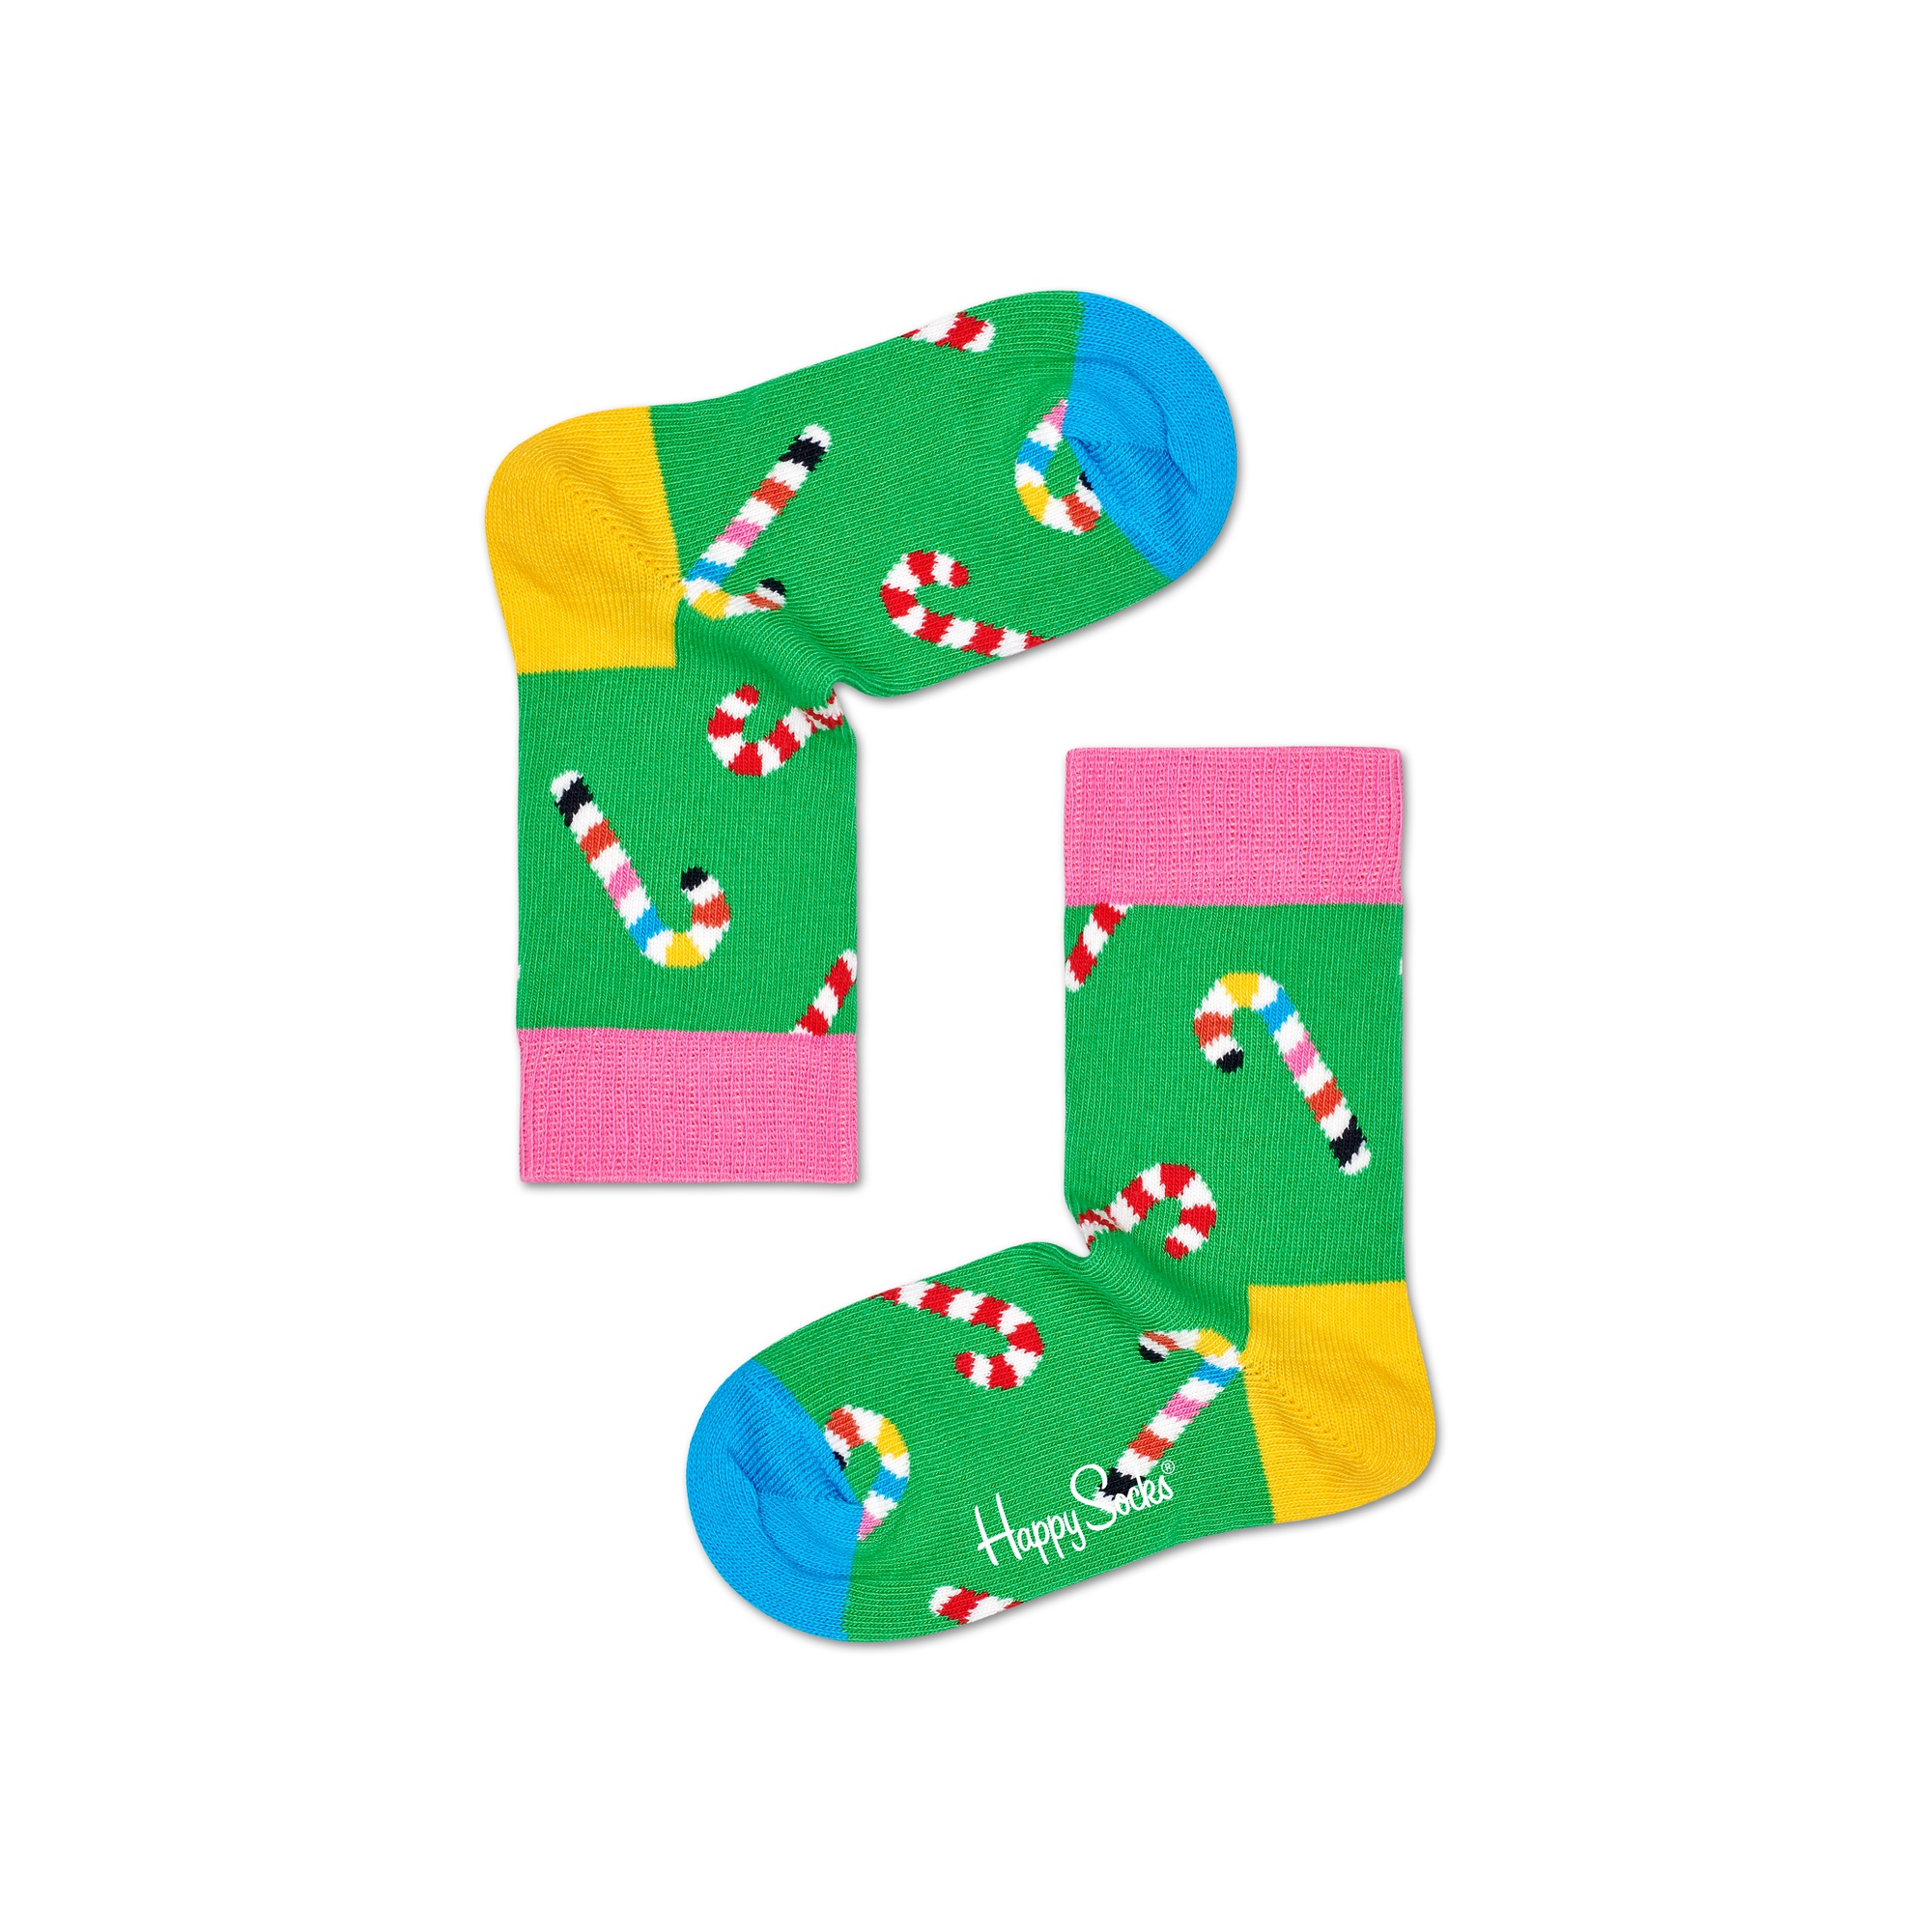 Par De Meias Kids Candy Cane - multicolor - 